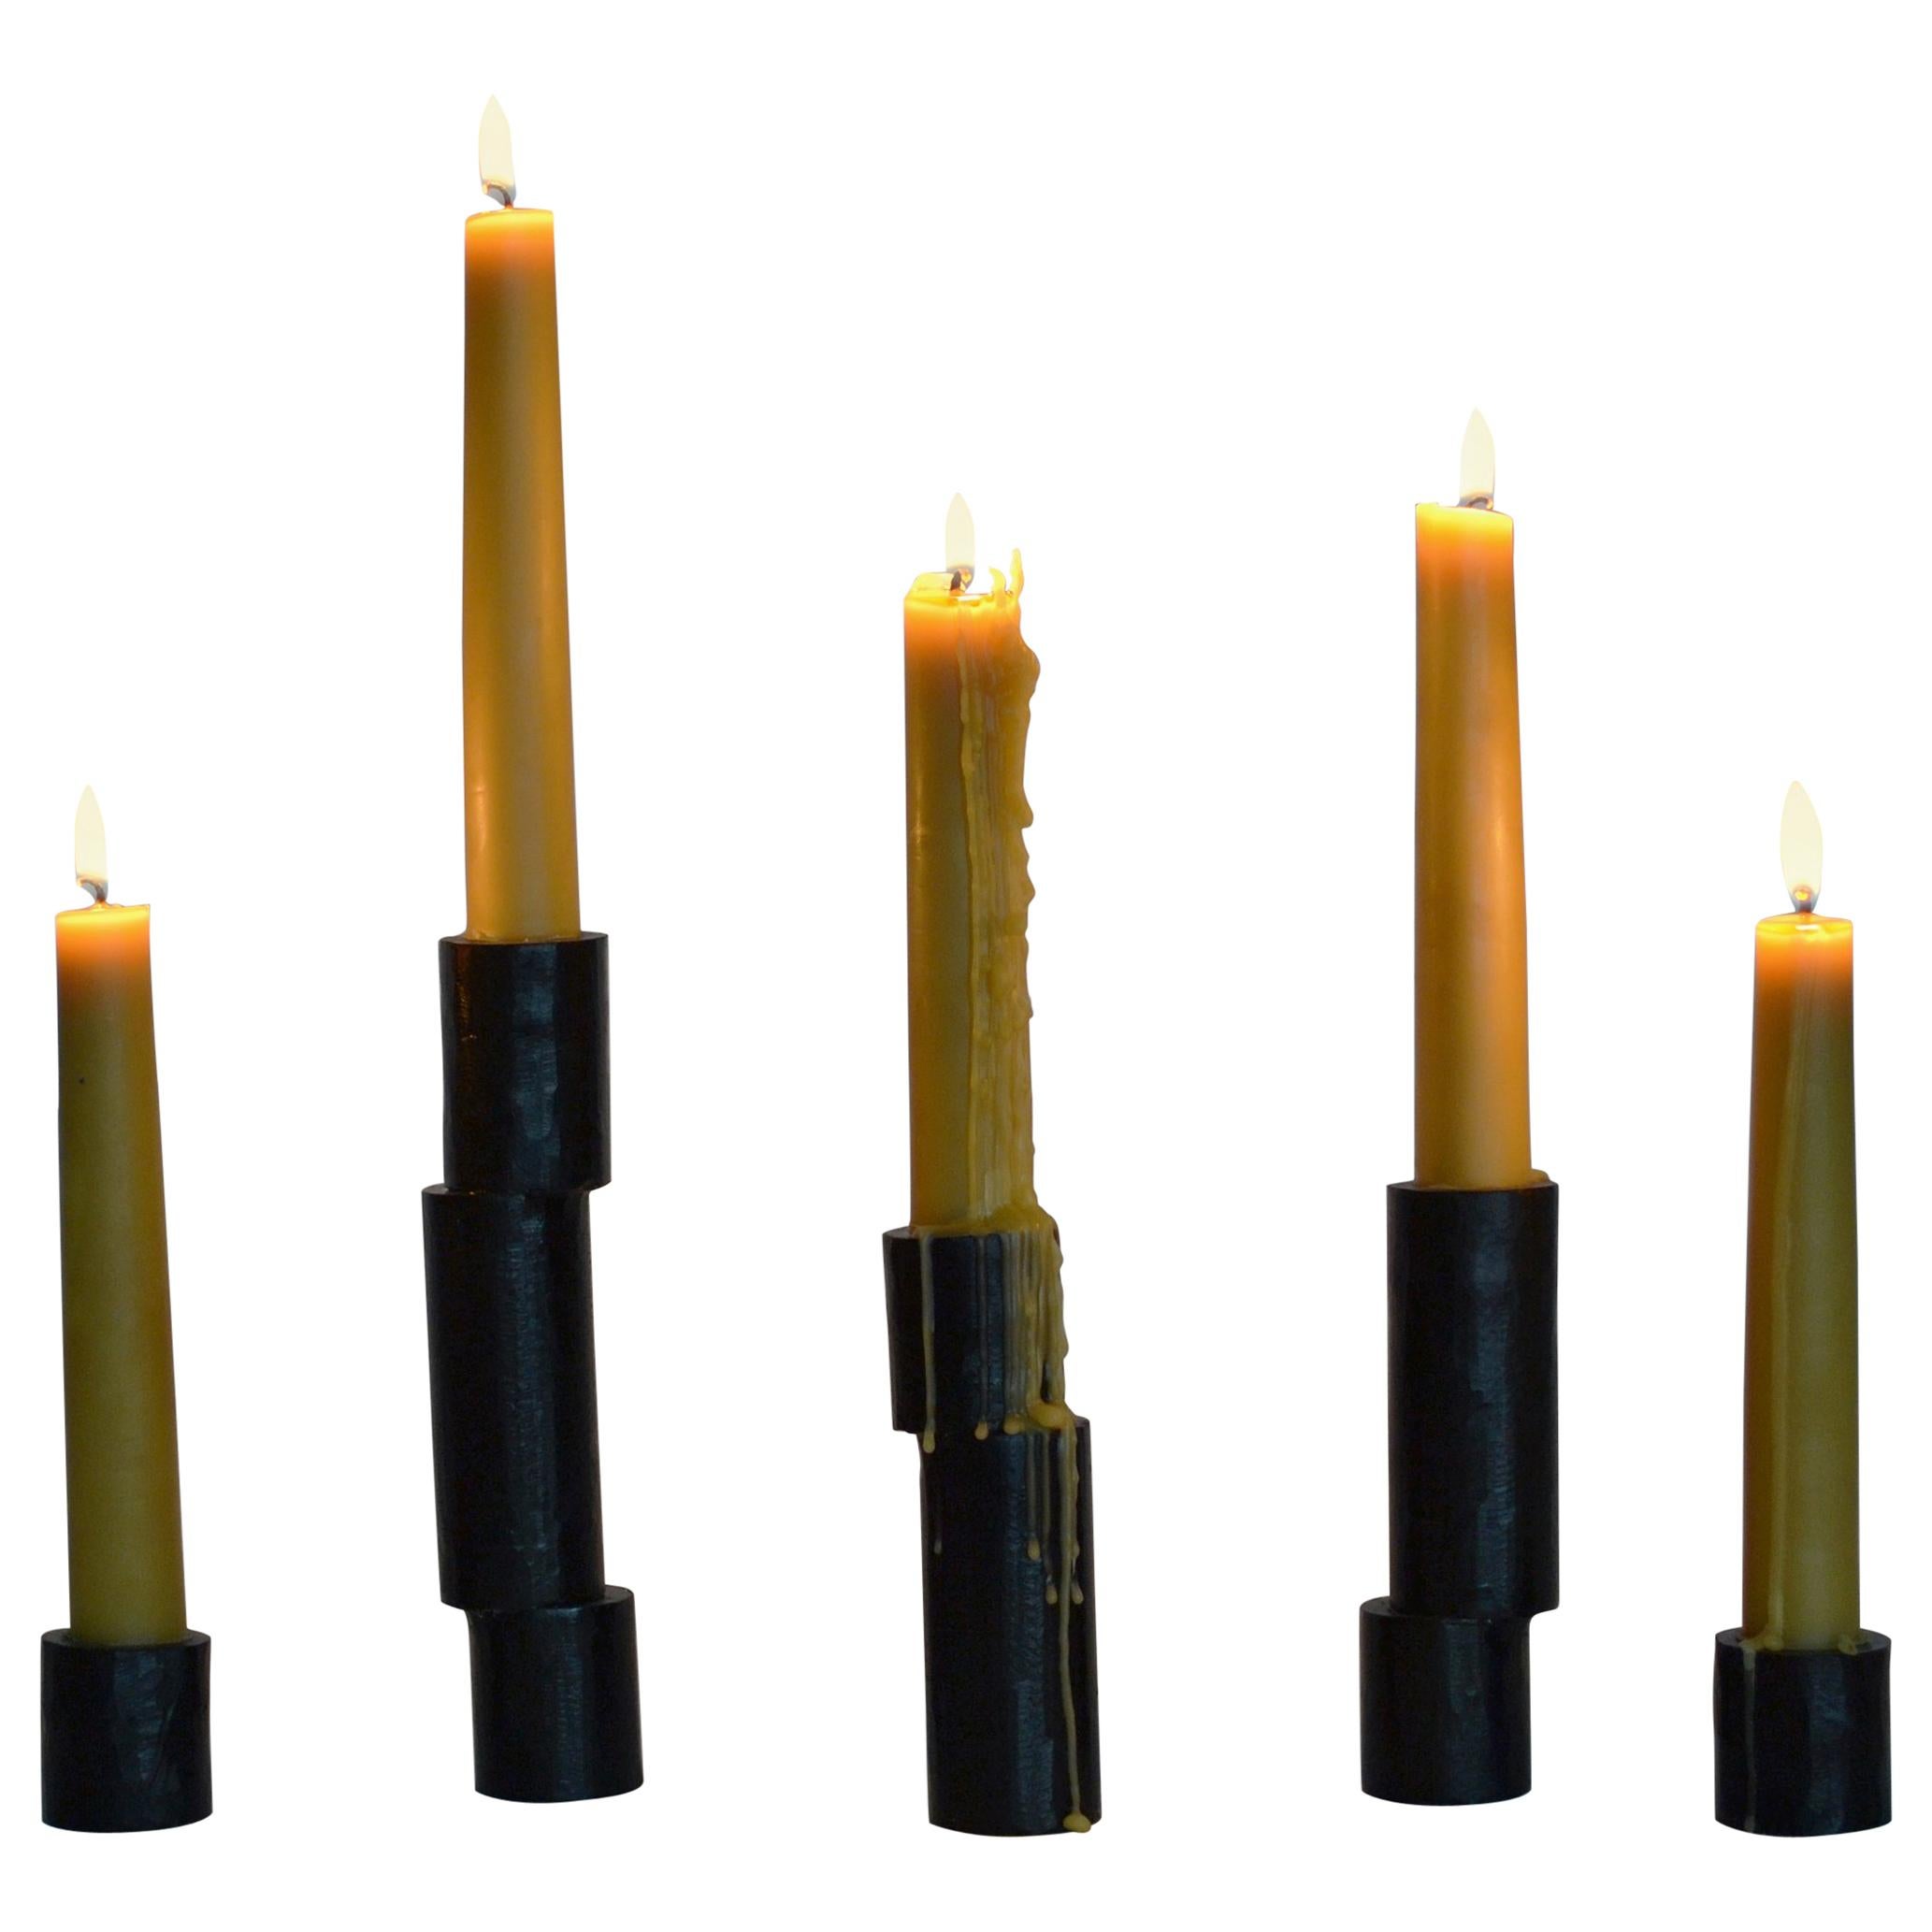 Kollektion von 5 dekorativen, geschwärzten, handgefertigten Kerzenständer-Accessoires aus Gusseisen